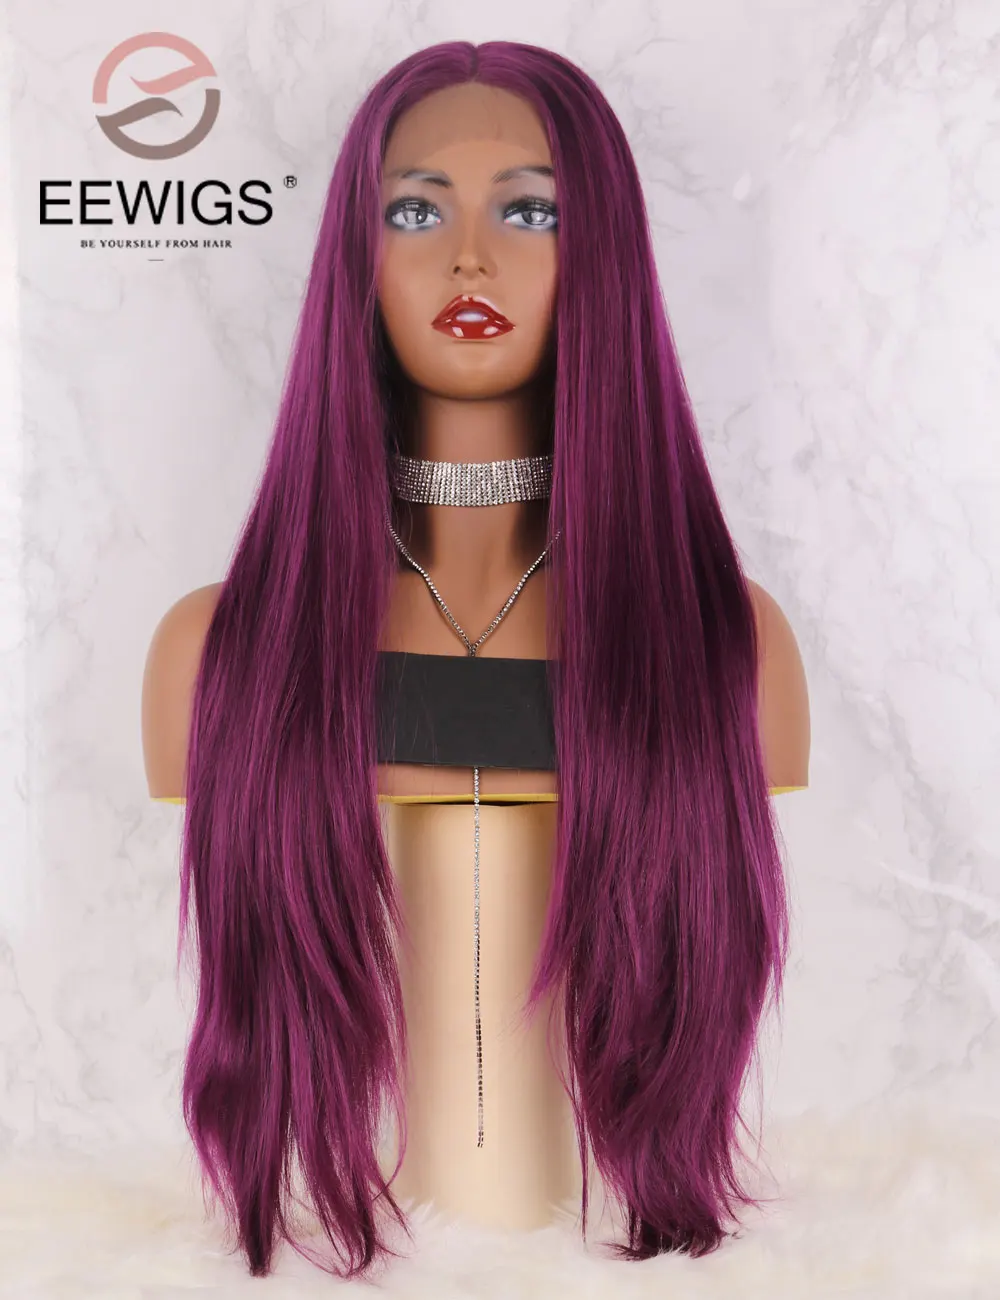 EEWIGS светильник розовый до белый цвет Омбре высокая температура Полный парик волос длинные натуральные прямые синтетические кружева передний парик для женщин